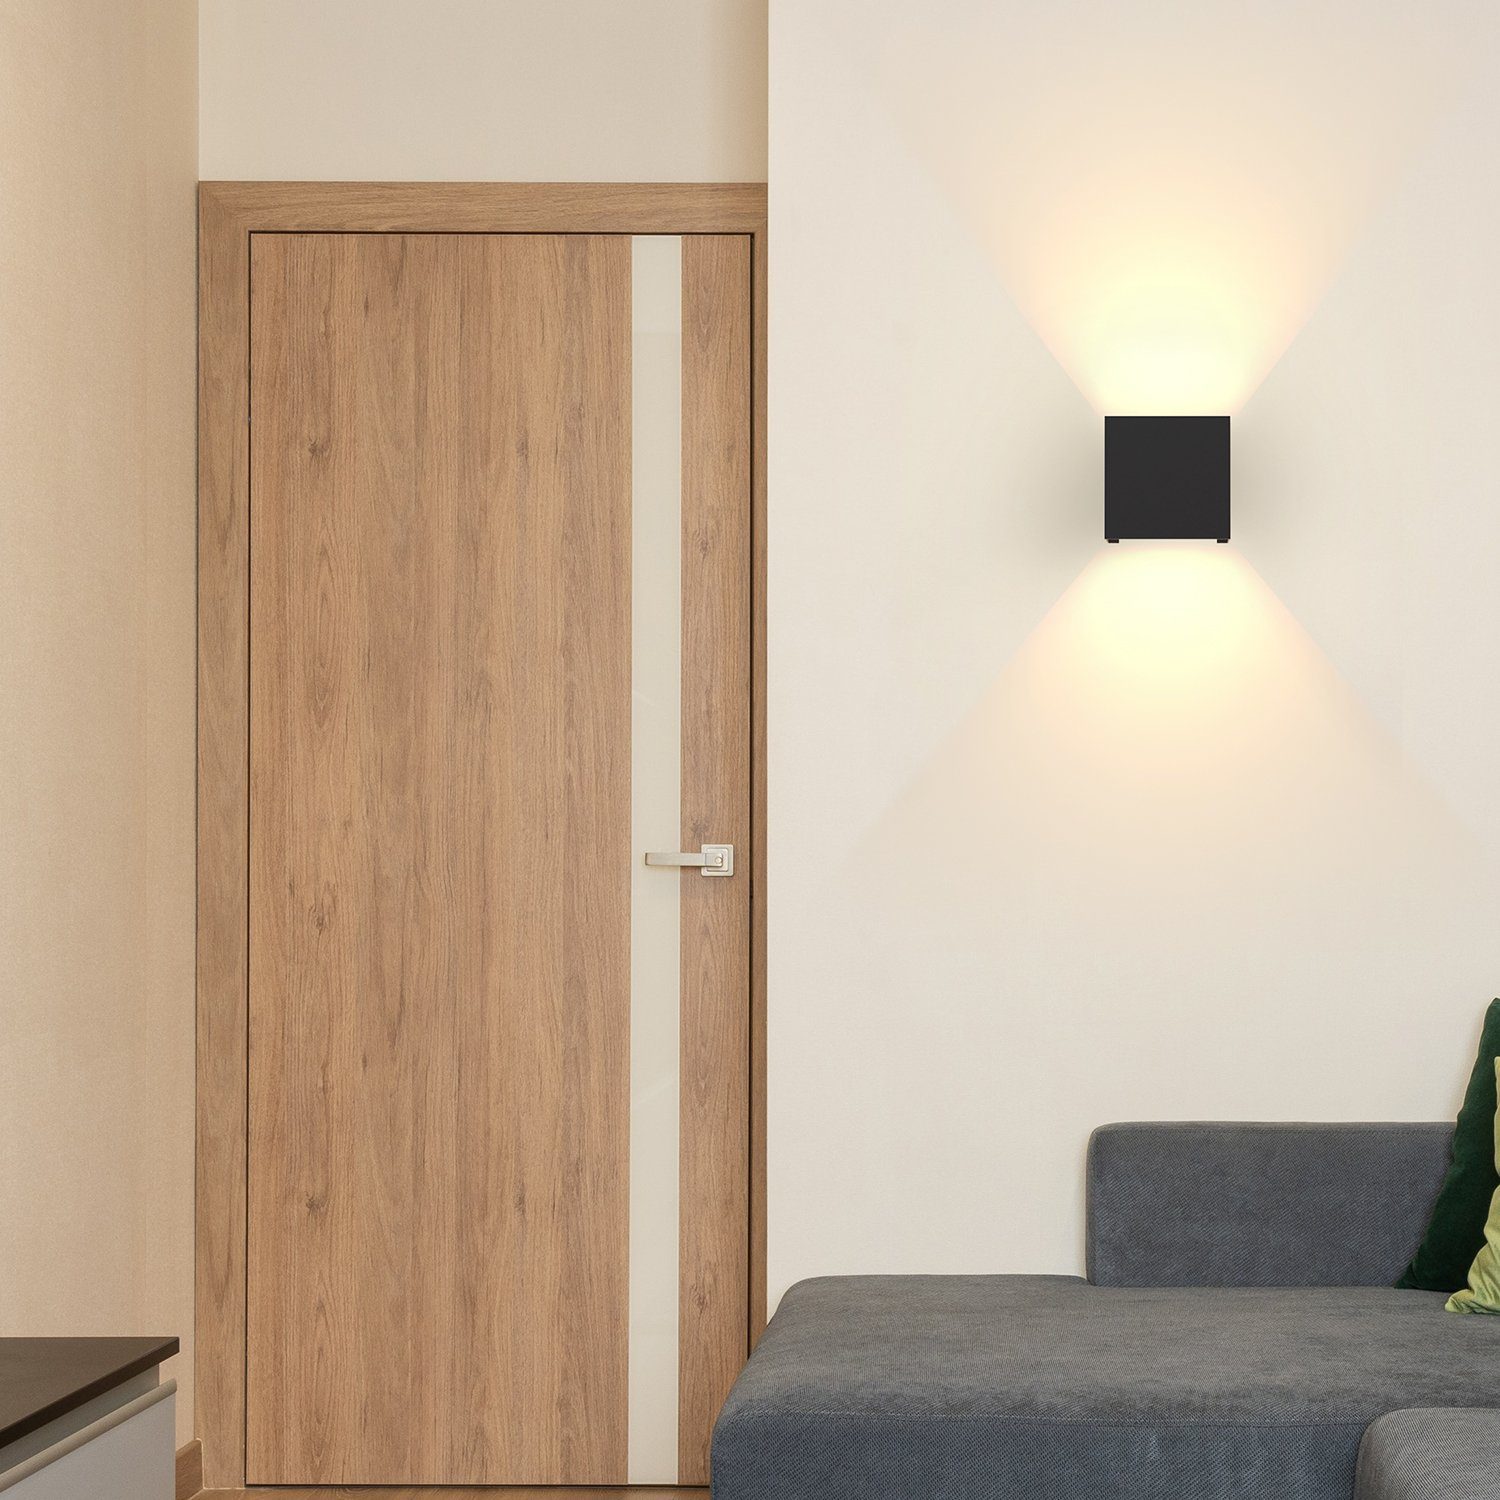 und LED Wandleuchte Badezimmer Außenbereiche, Flure Nettlife Wohnzimmer Schlafzimmer IP65, fest Warmweiß, integriert, Schwarz Led Wandlampe Down Up Strahl Wasserdicht 5W für staubdicht,